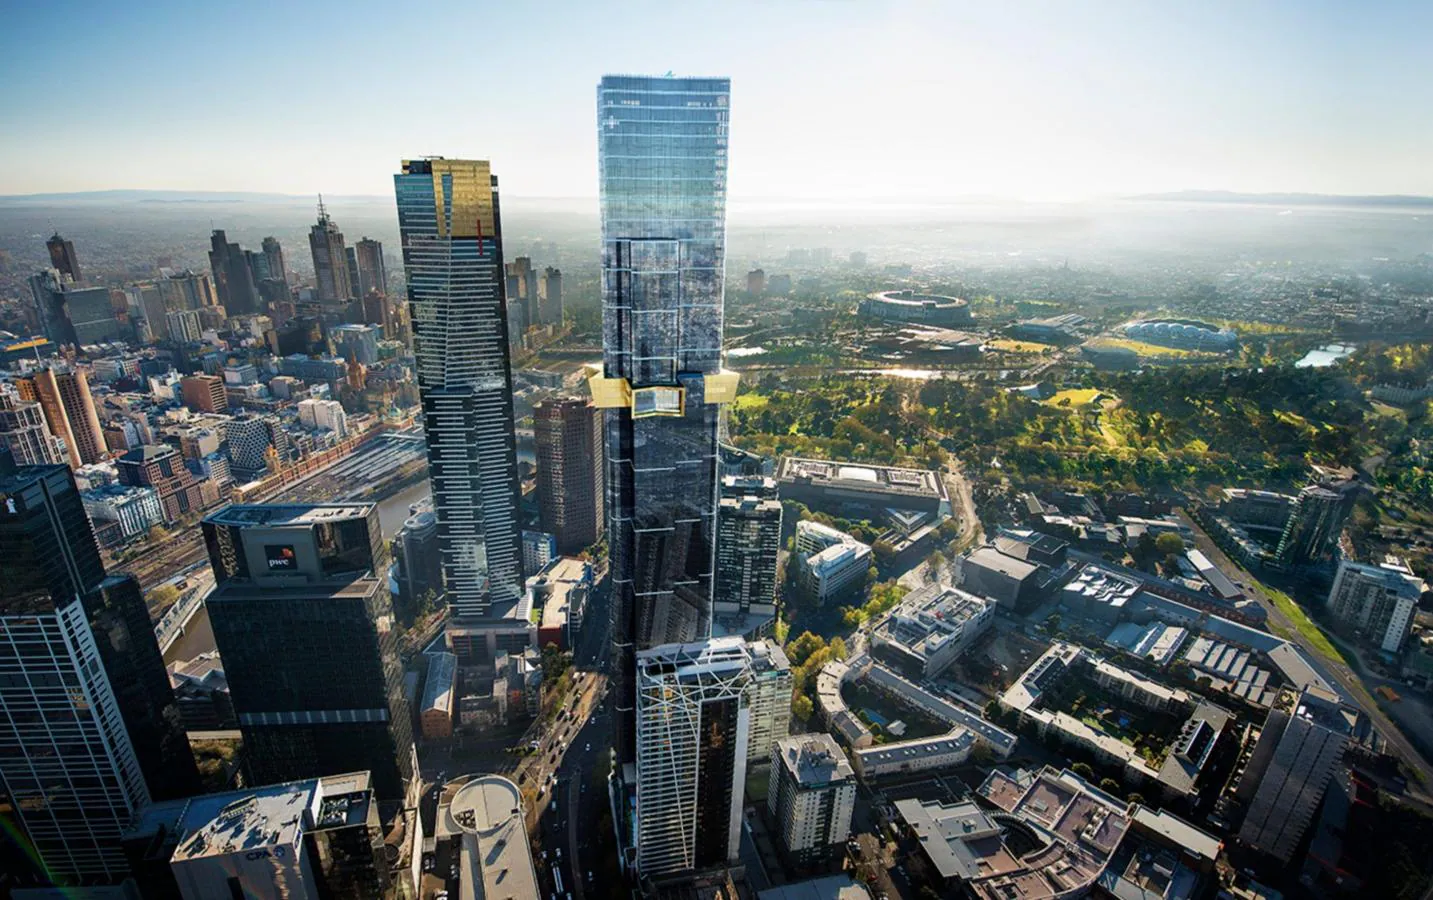 7. Australia 108, Melbourne. Ubicado en el distrito Southbank de Melbourne, el Autralia 108, de 319 metros de altura, es uno de los edificios más espectaculares de la ciudad. El rascacielos cuenta con 100 plantas y más de 1.100 viviendas. Construido por Fender Katsalidis Architects, lo que más llama la atención en cuanto a su diseño exterior es la parte superior de la torre que simboliza la Estrella de la Commonwealth en la bandera australiana.